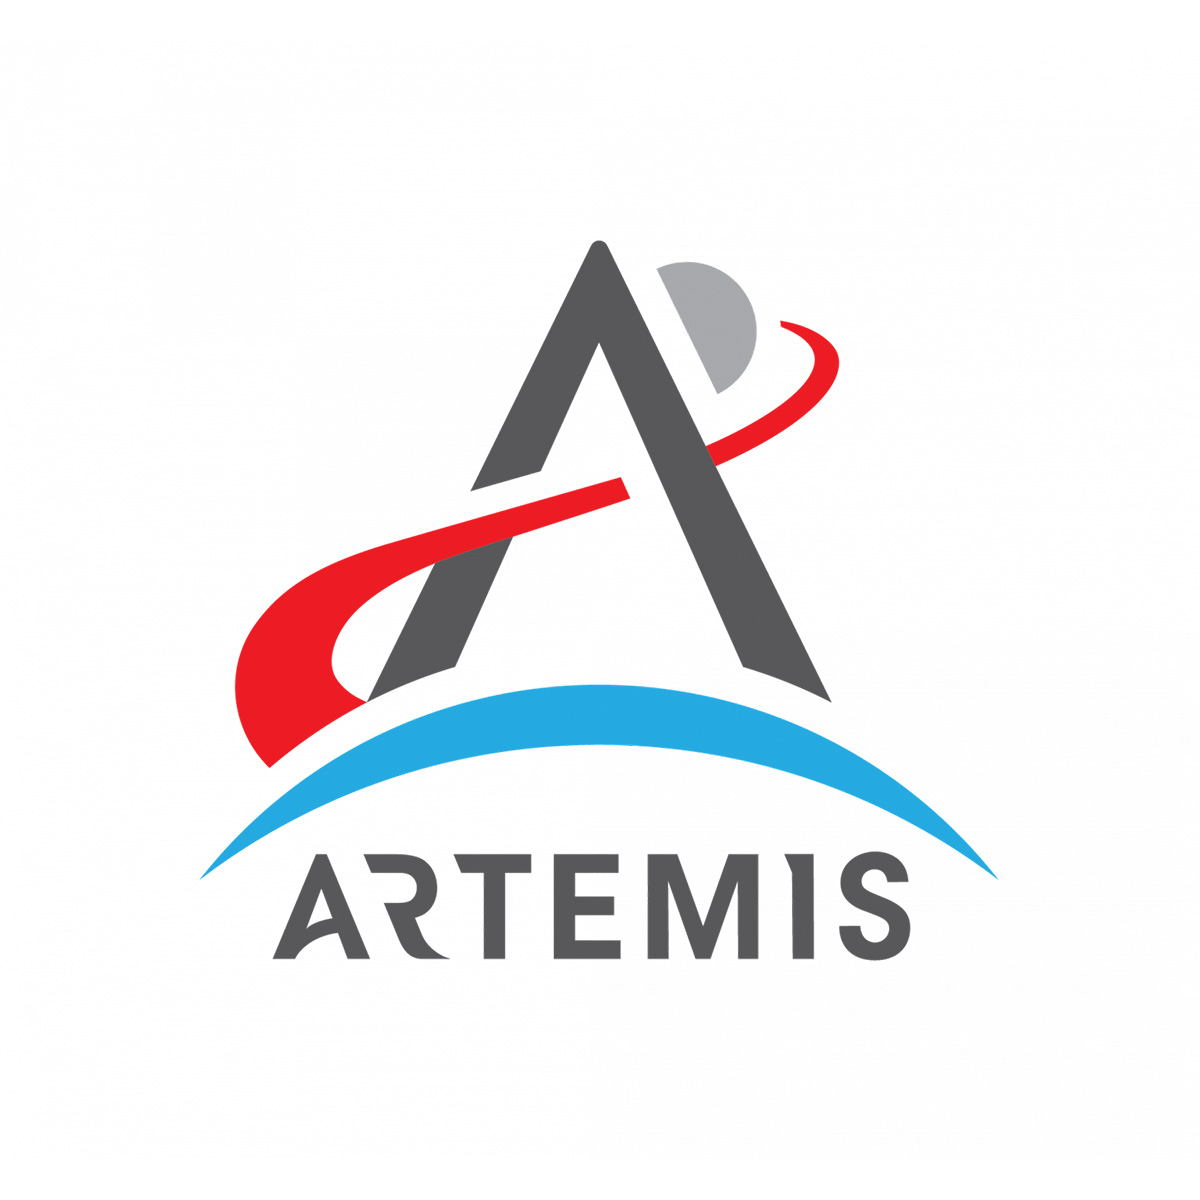 Artemis missions logo